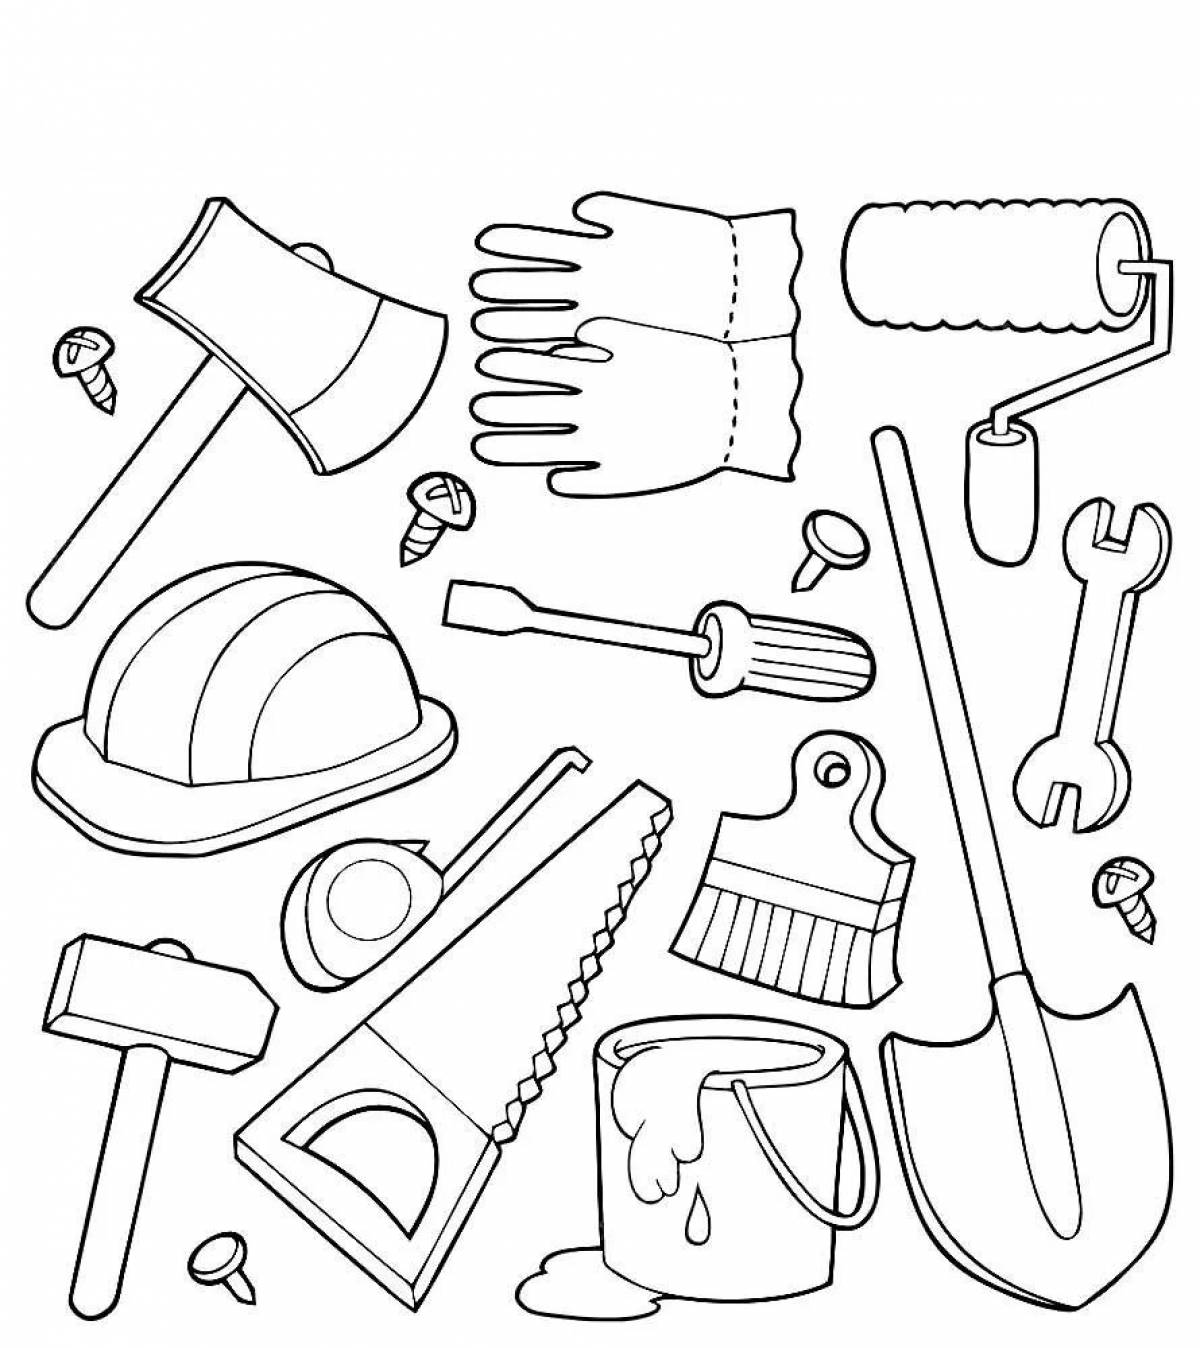 Tools tools #2